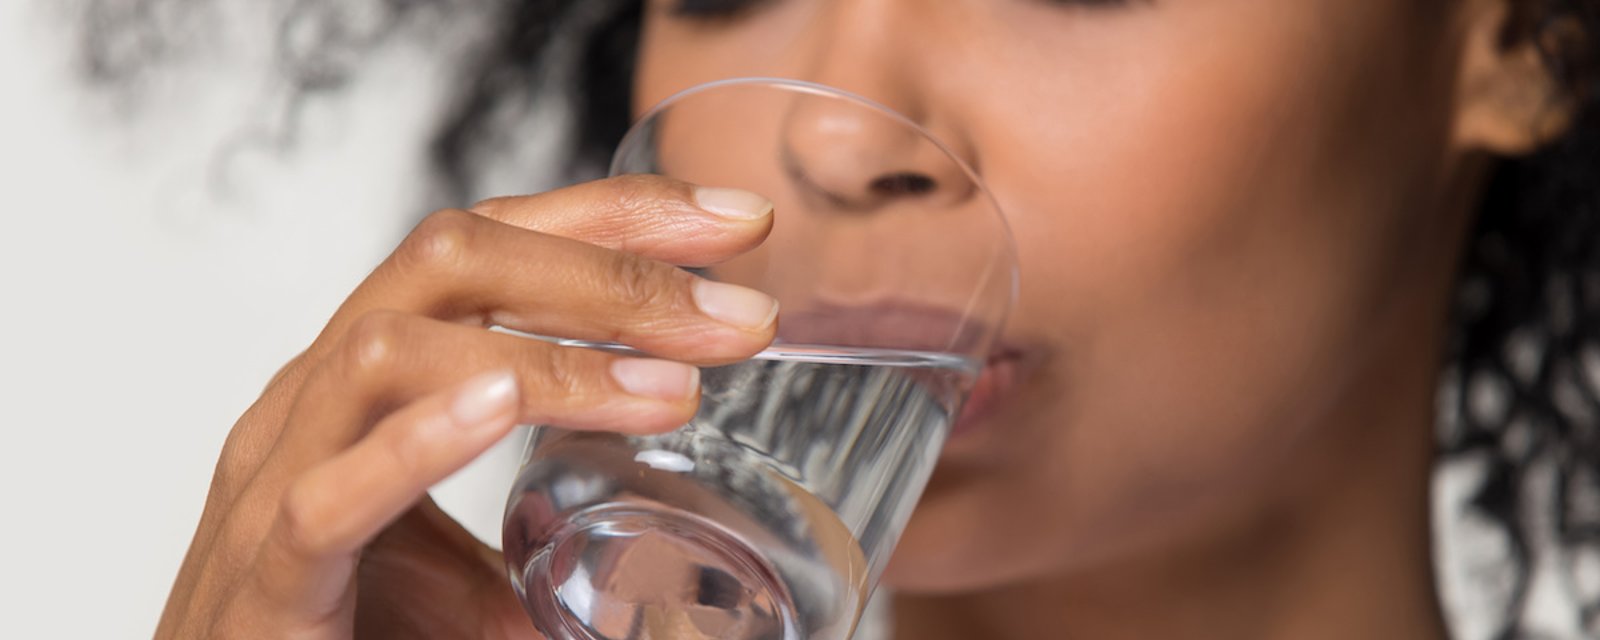 6 bienfaits sur votre corps quand vous buvez assez d’eau chaque jour